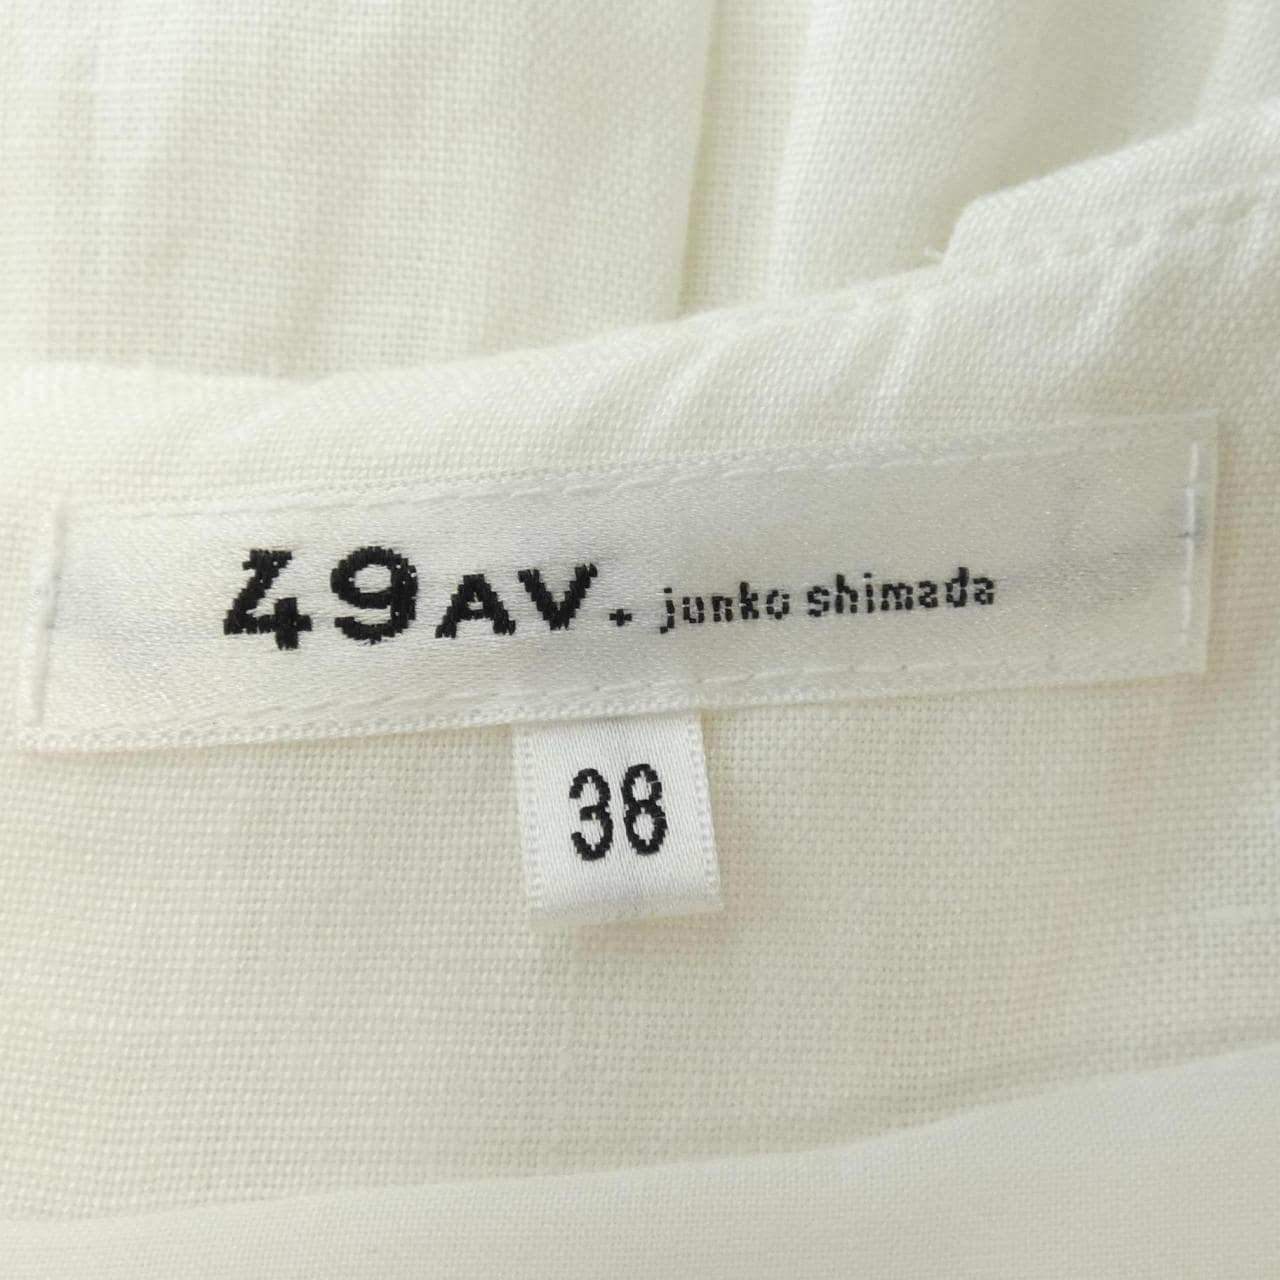 49アベニュージュンコシマダ 49AV.junko shimada スカート